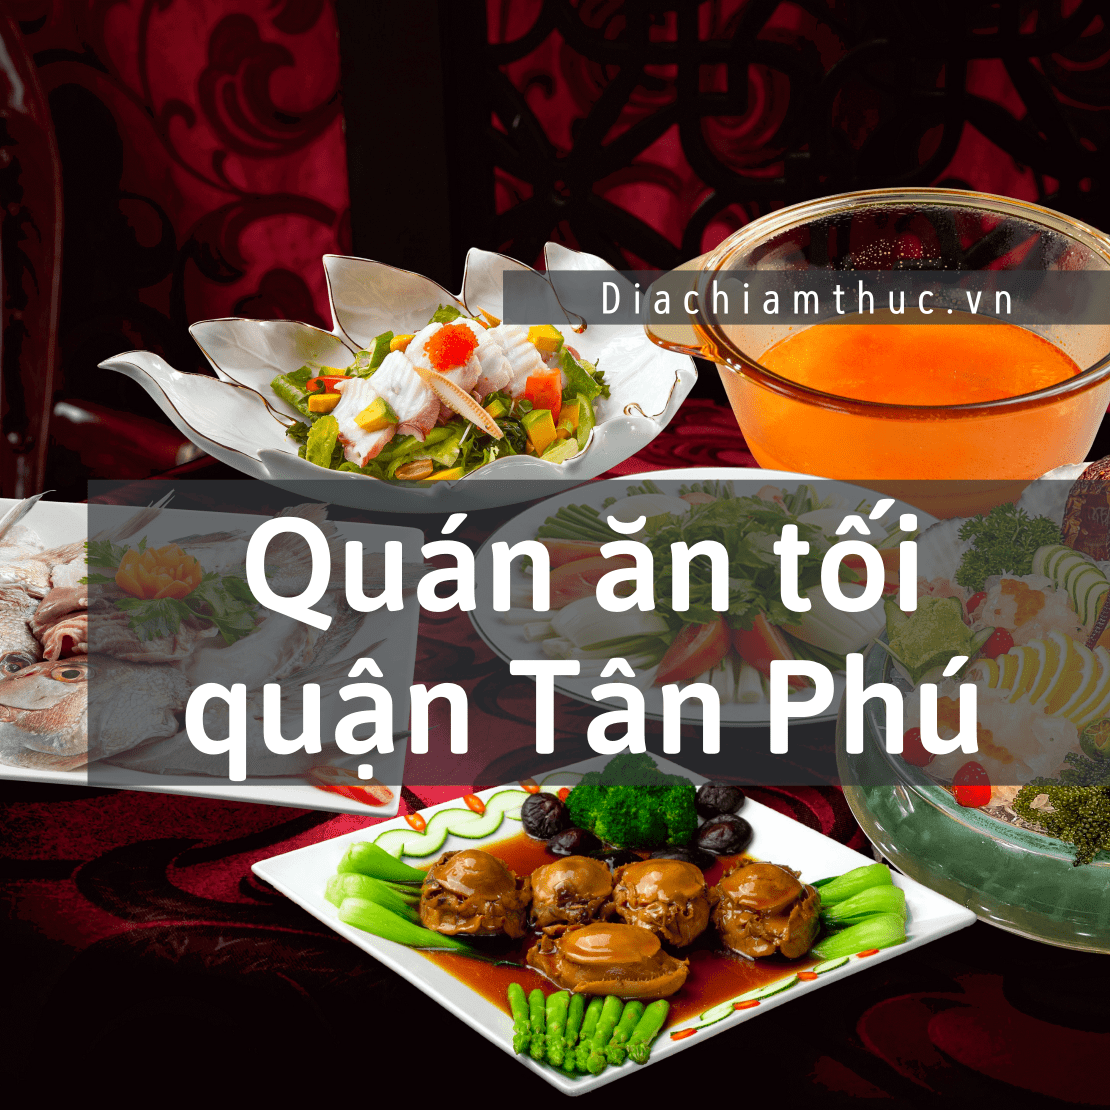 Quán ăn tối quận Tân Phú